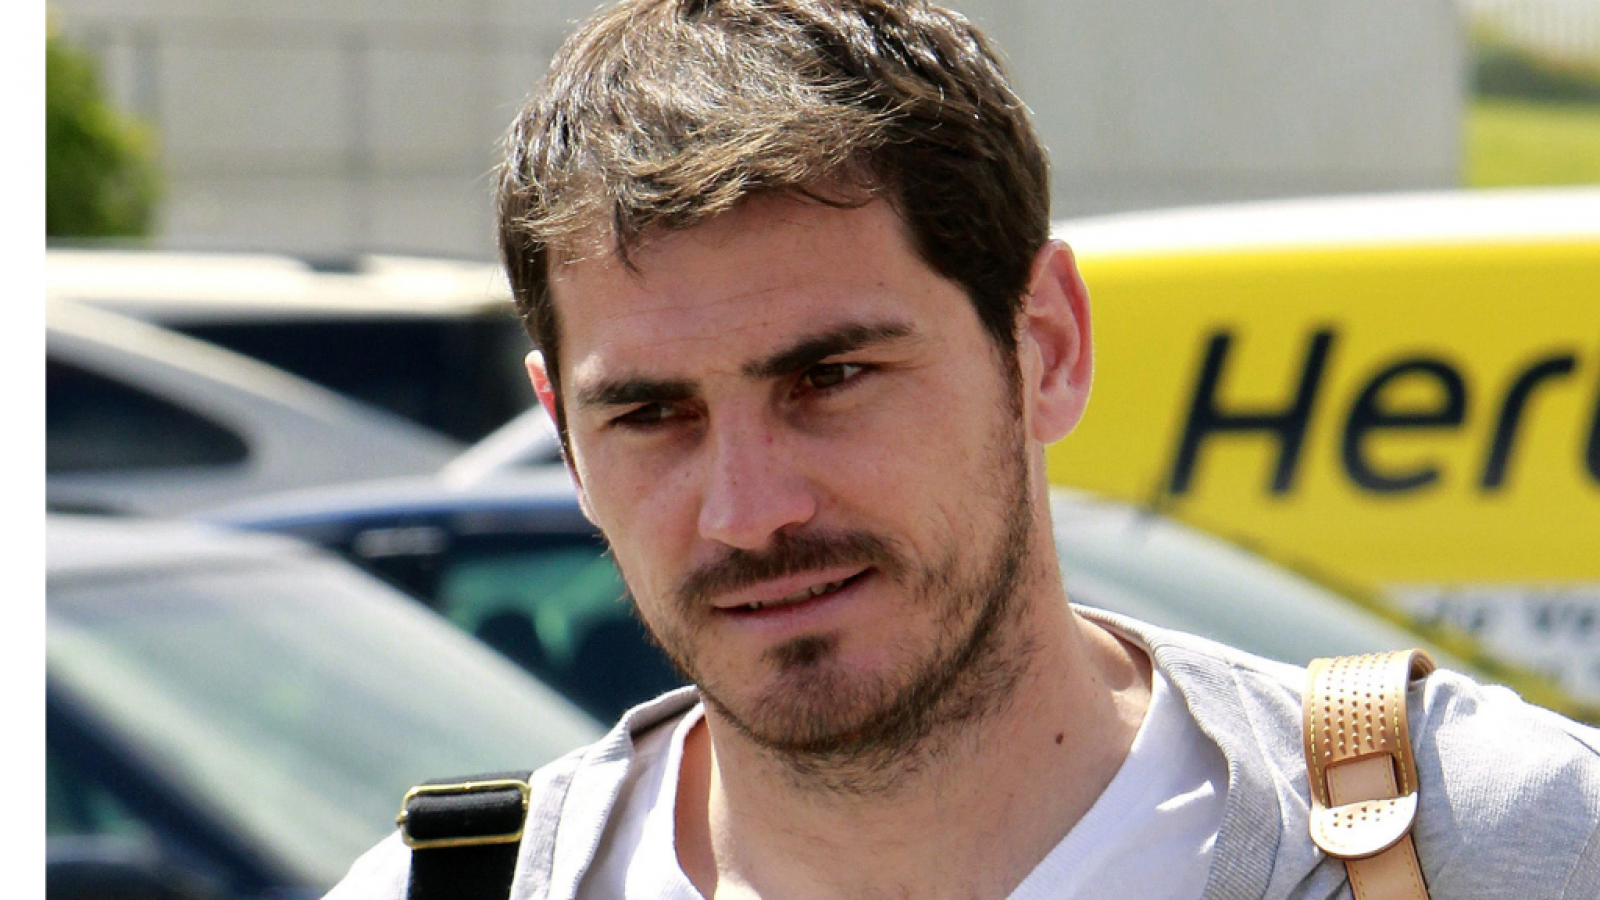 Corazón - Iker Casillas está fuera de peligro